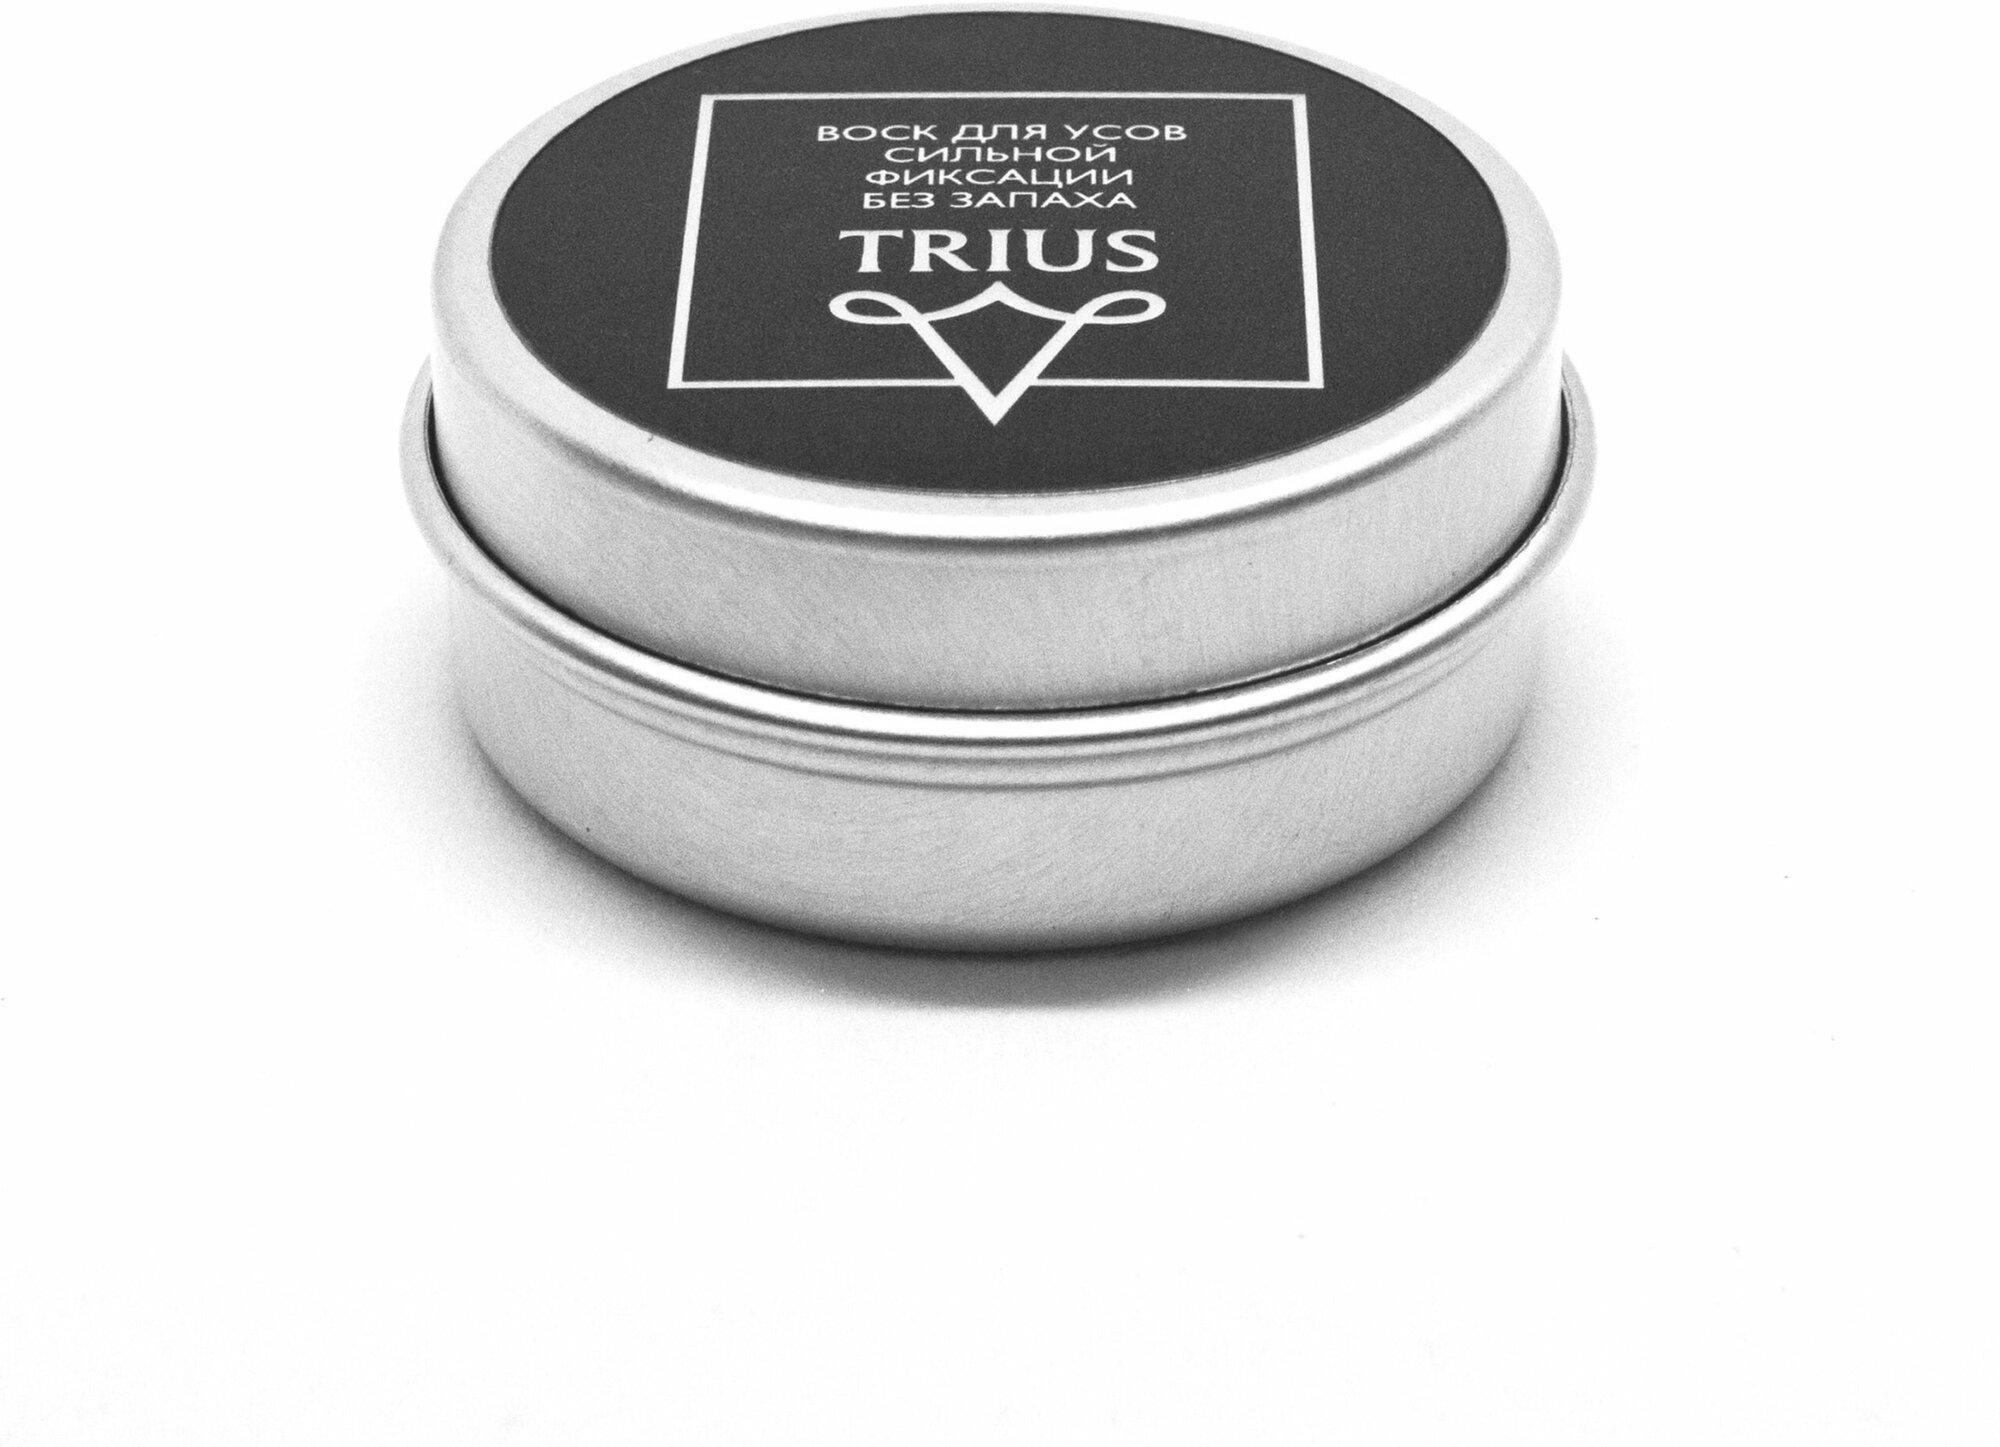 Воск для усов сильной фиксации Trius без запаха 15 мл